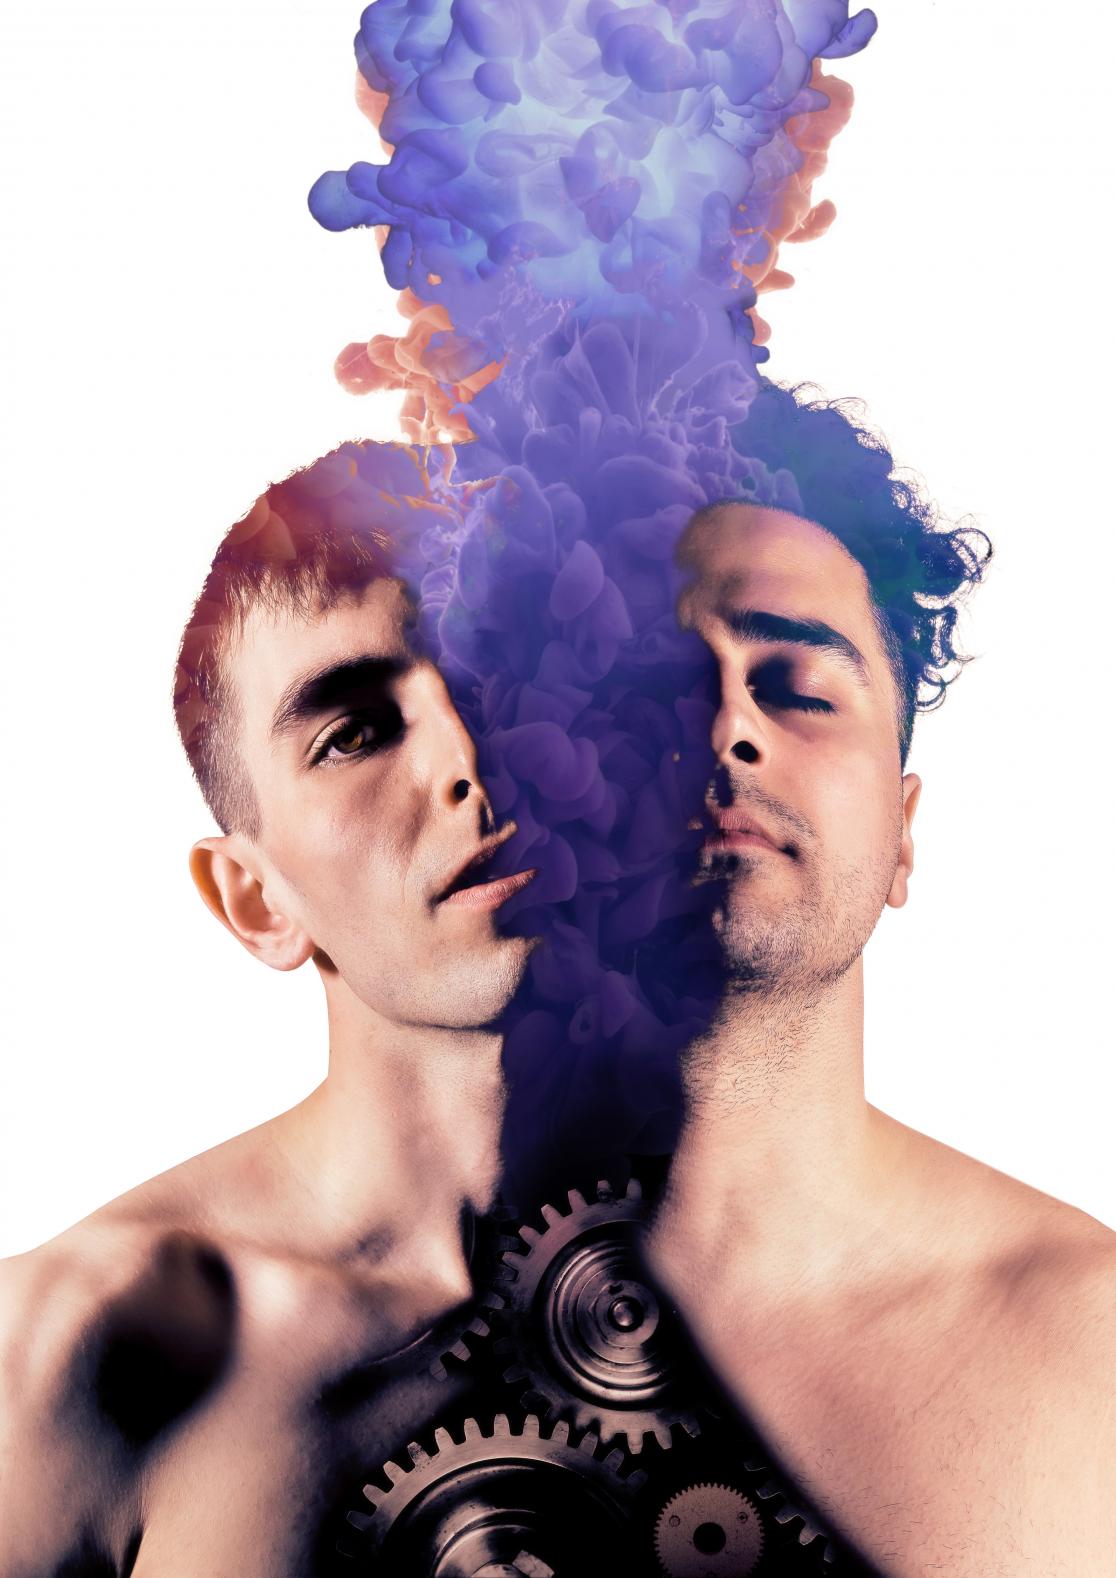 Kaksi henkilöä voimakkaasti muokatussa kuvassa. Heidän välistään nousee violettia savua.